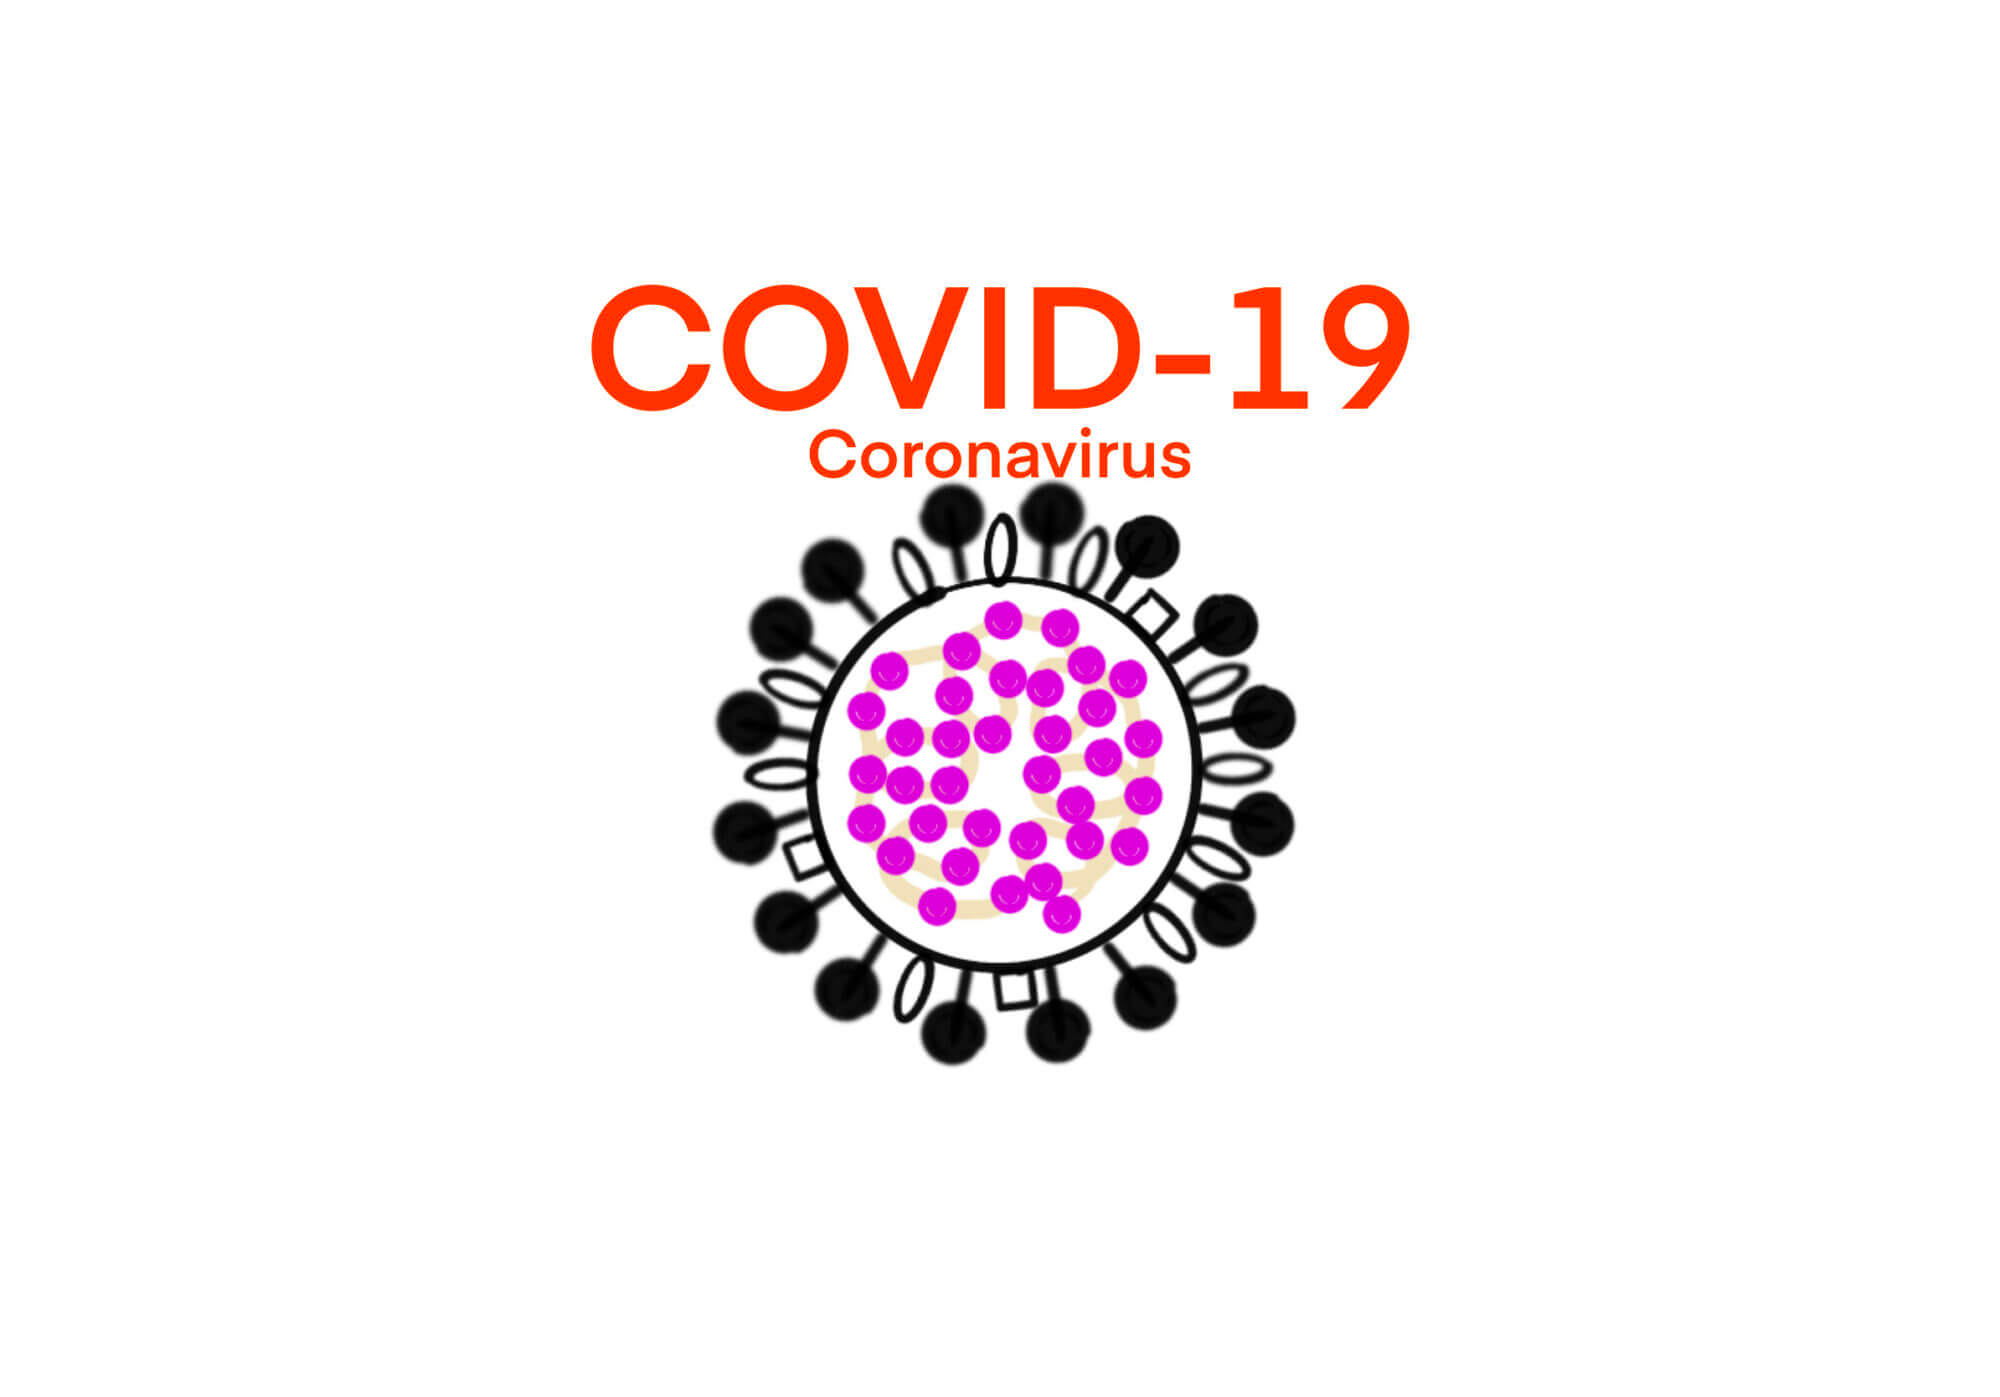 [Edu] Creative Biolabs Inc.が公開しているビデオから – COVID-19の原因ウイルスである新型コロナウイルス(SARS-CoV-2)の構造について学ぶ [2020/05/21] ID16089